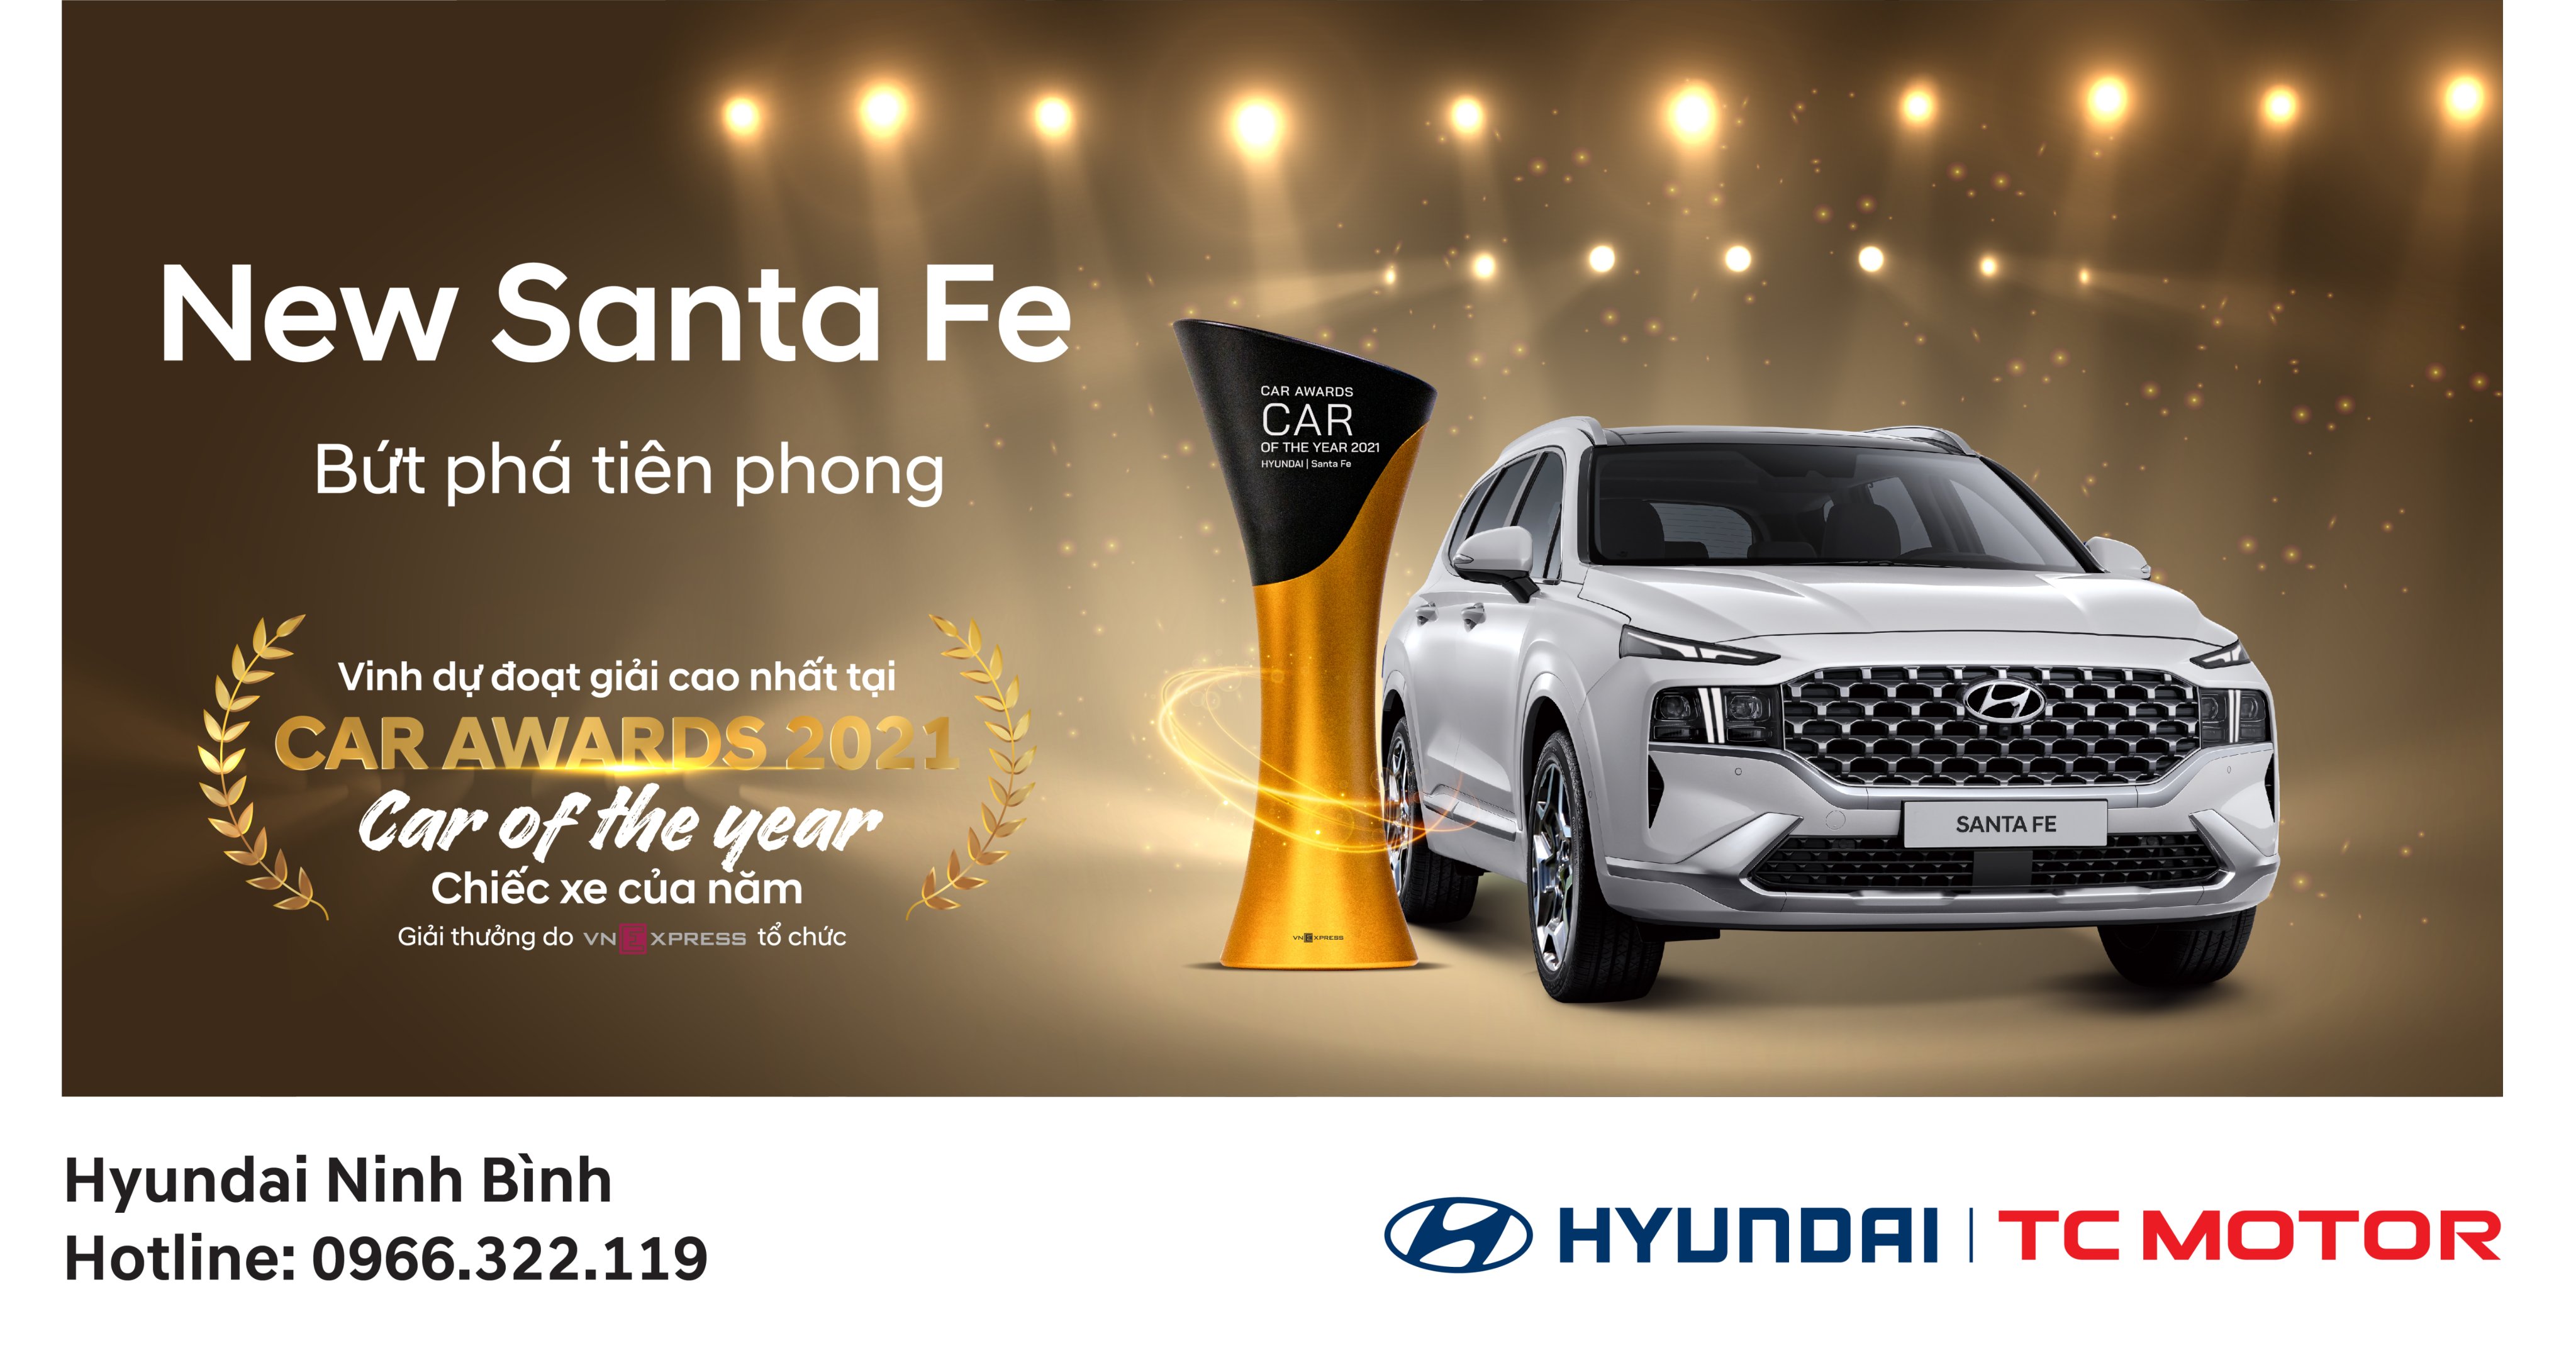 Hyundai Santa Fe là Ôtô của năm 2021️